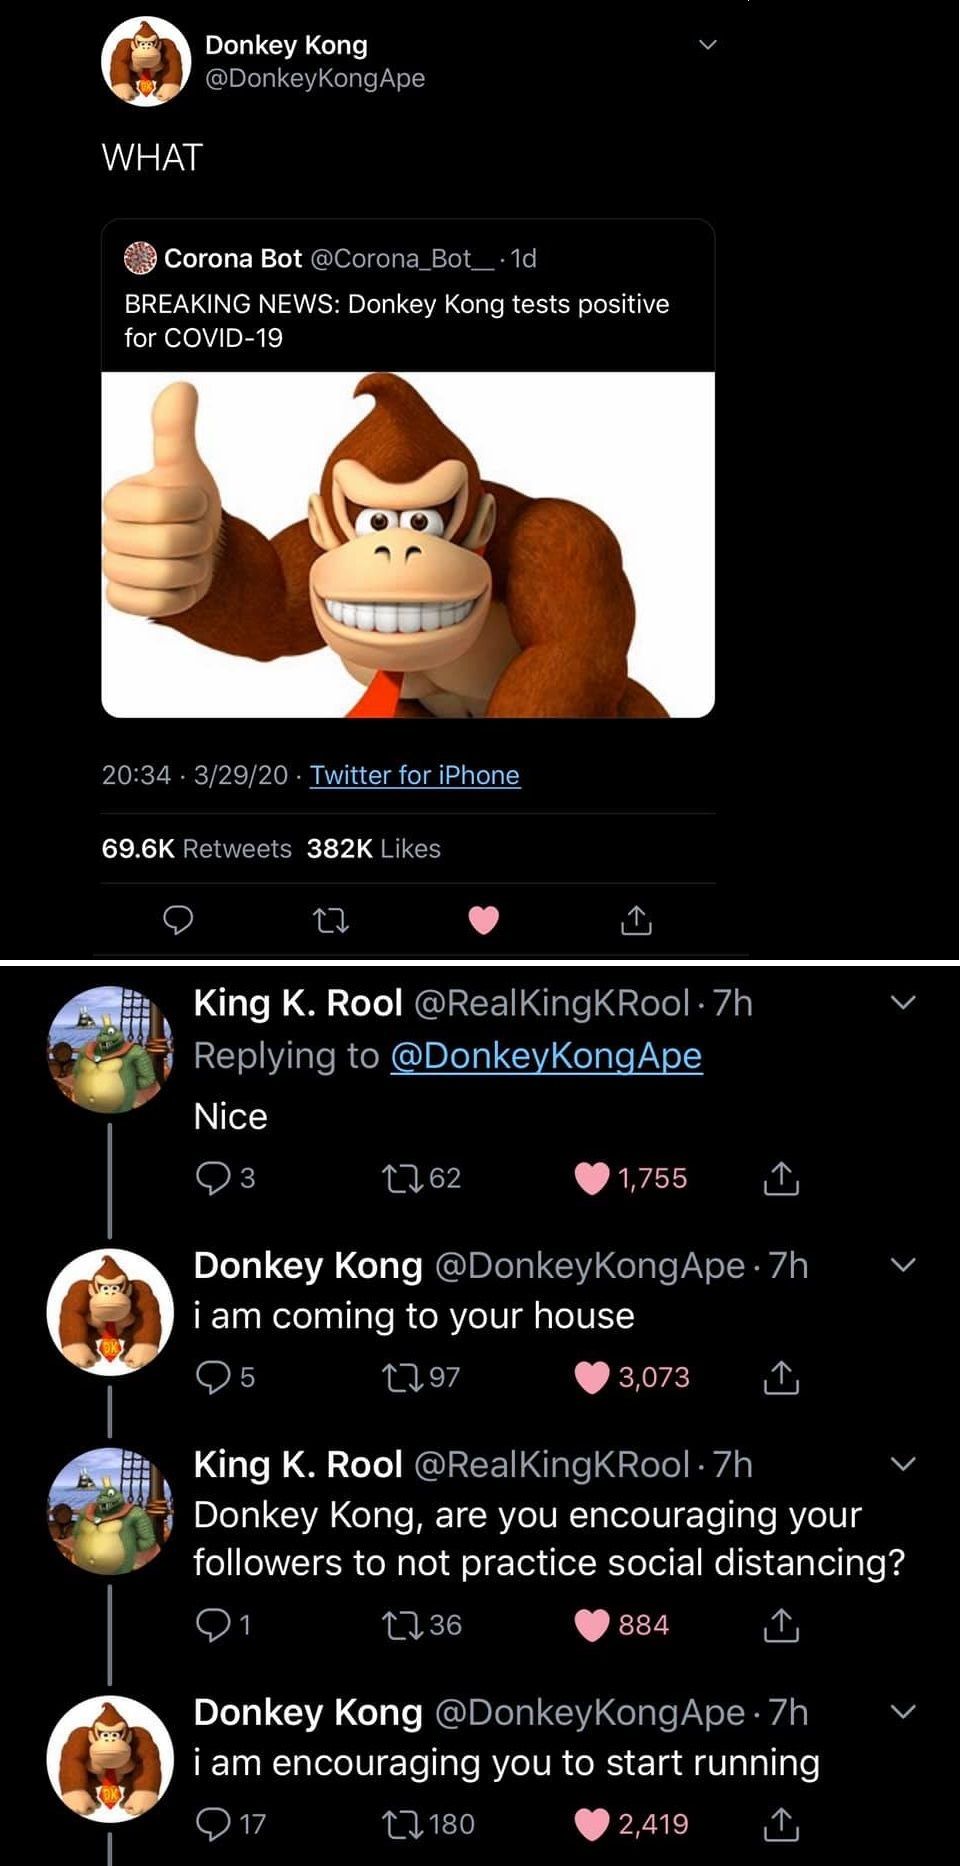 Expand Kong